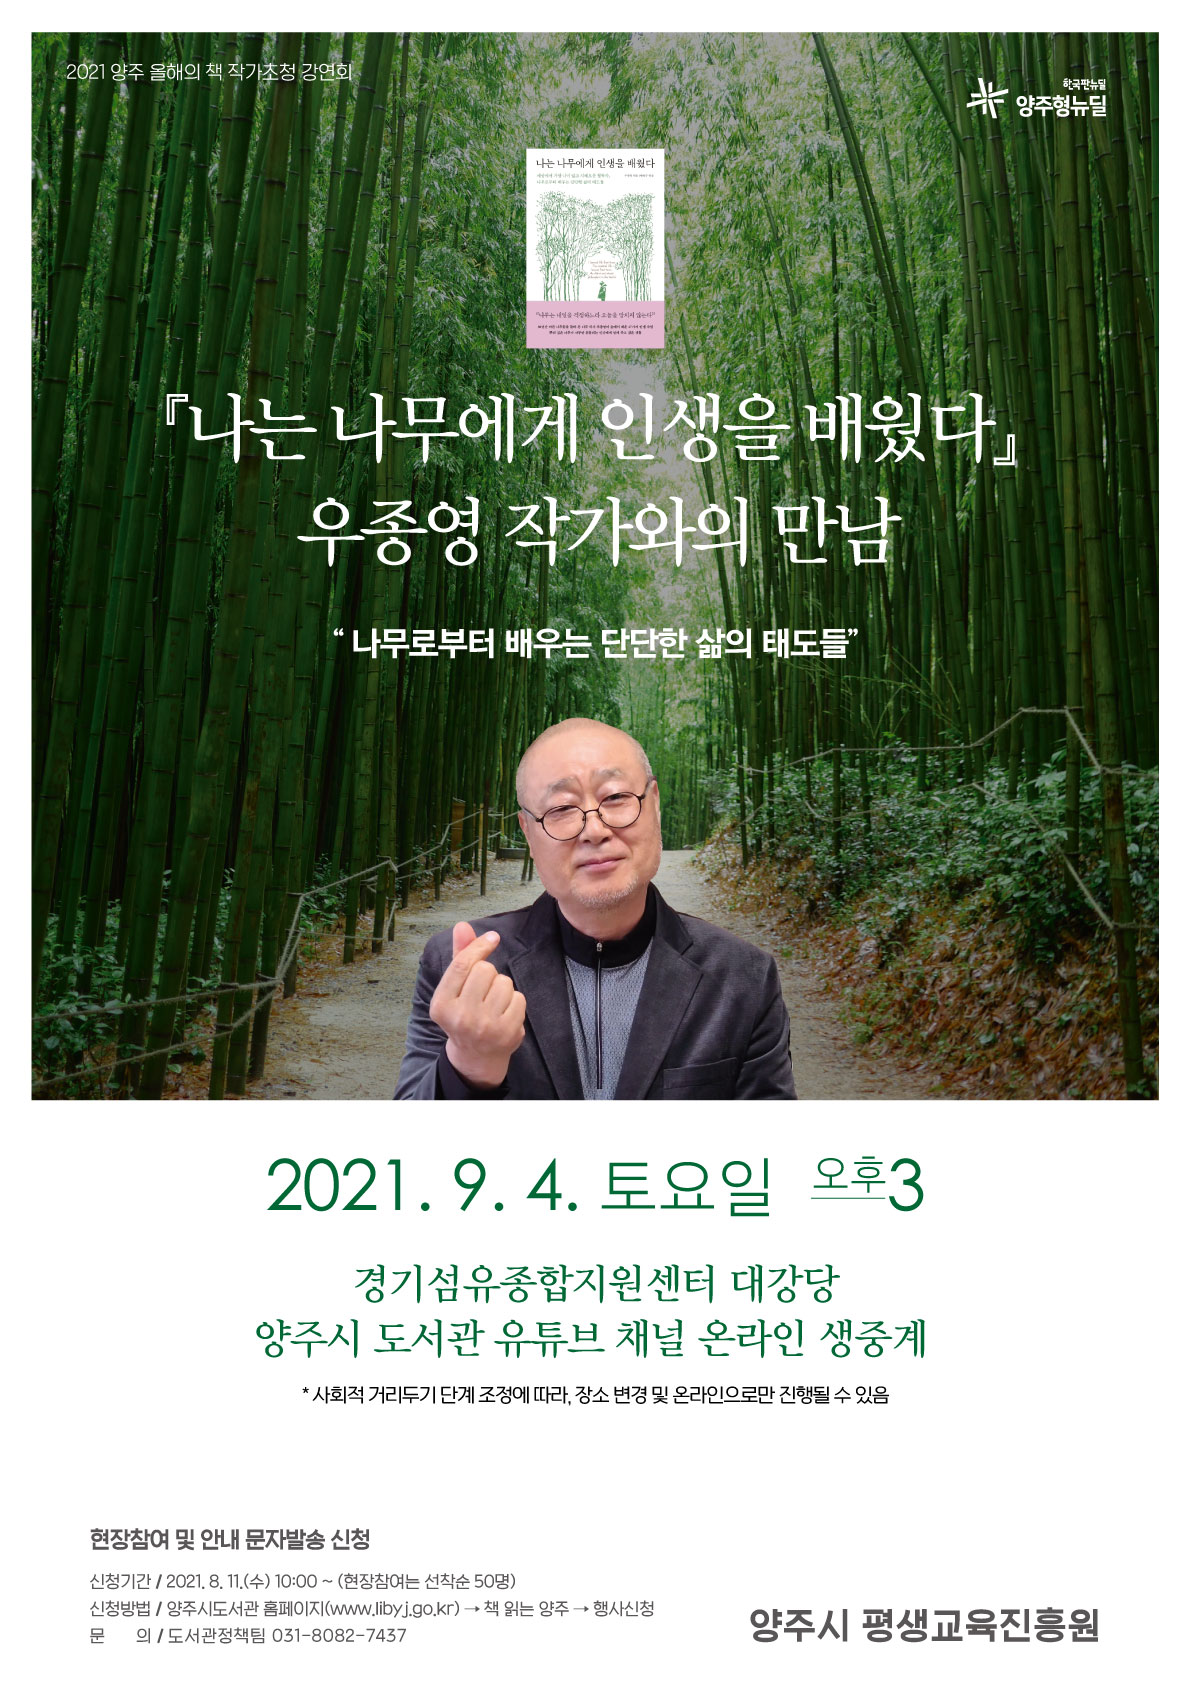 양주시, 2021 양주 올해의 책‘나는 나무에게 인생을 배웠다’저자 우종영 작가 초청 강연회 개최 이미지